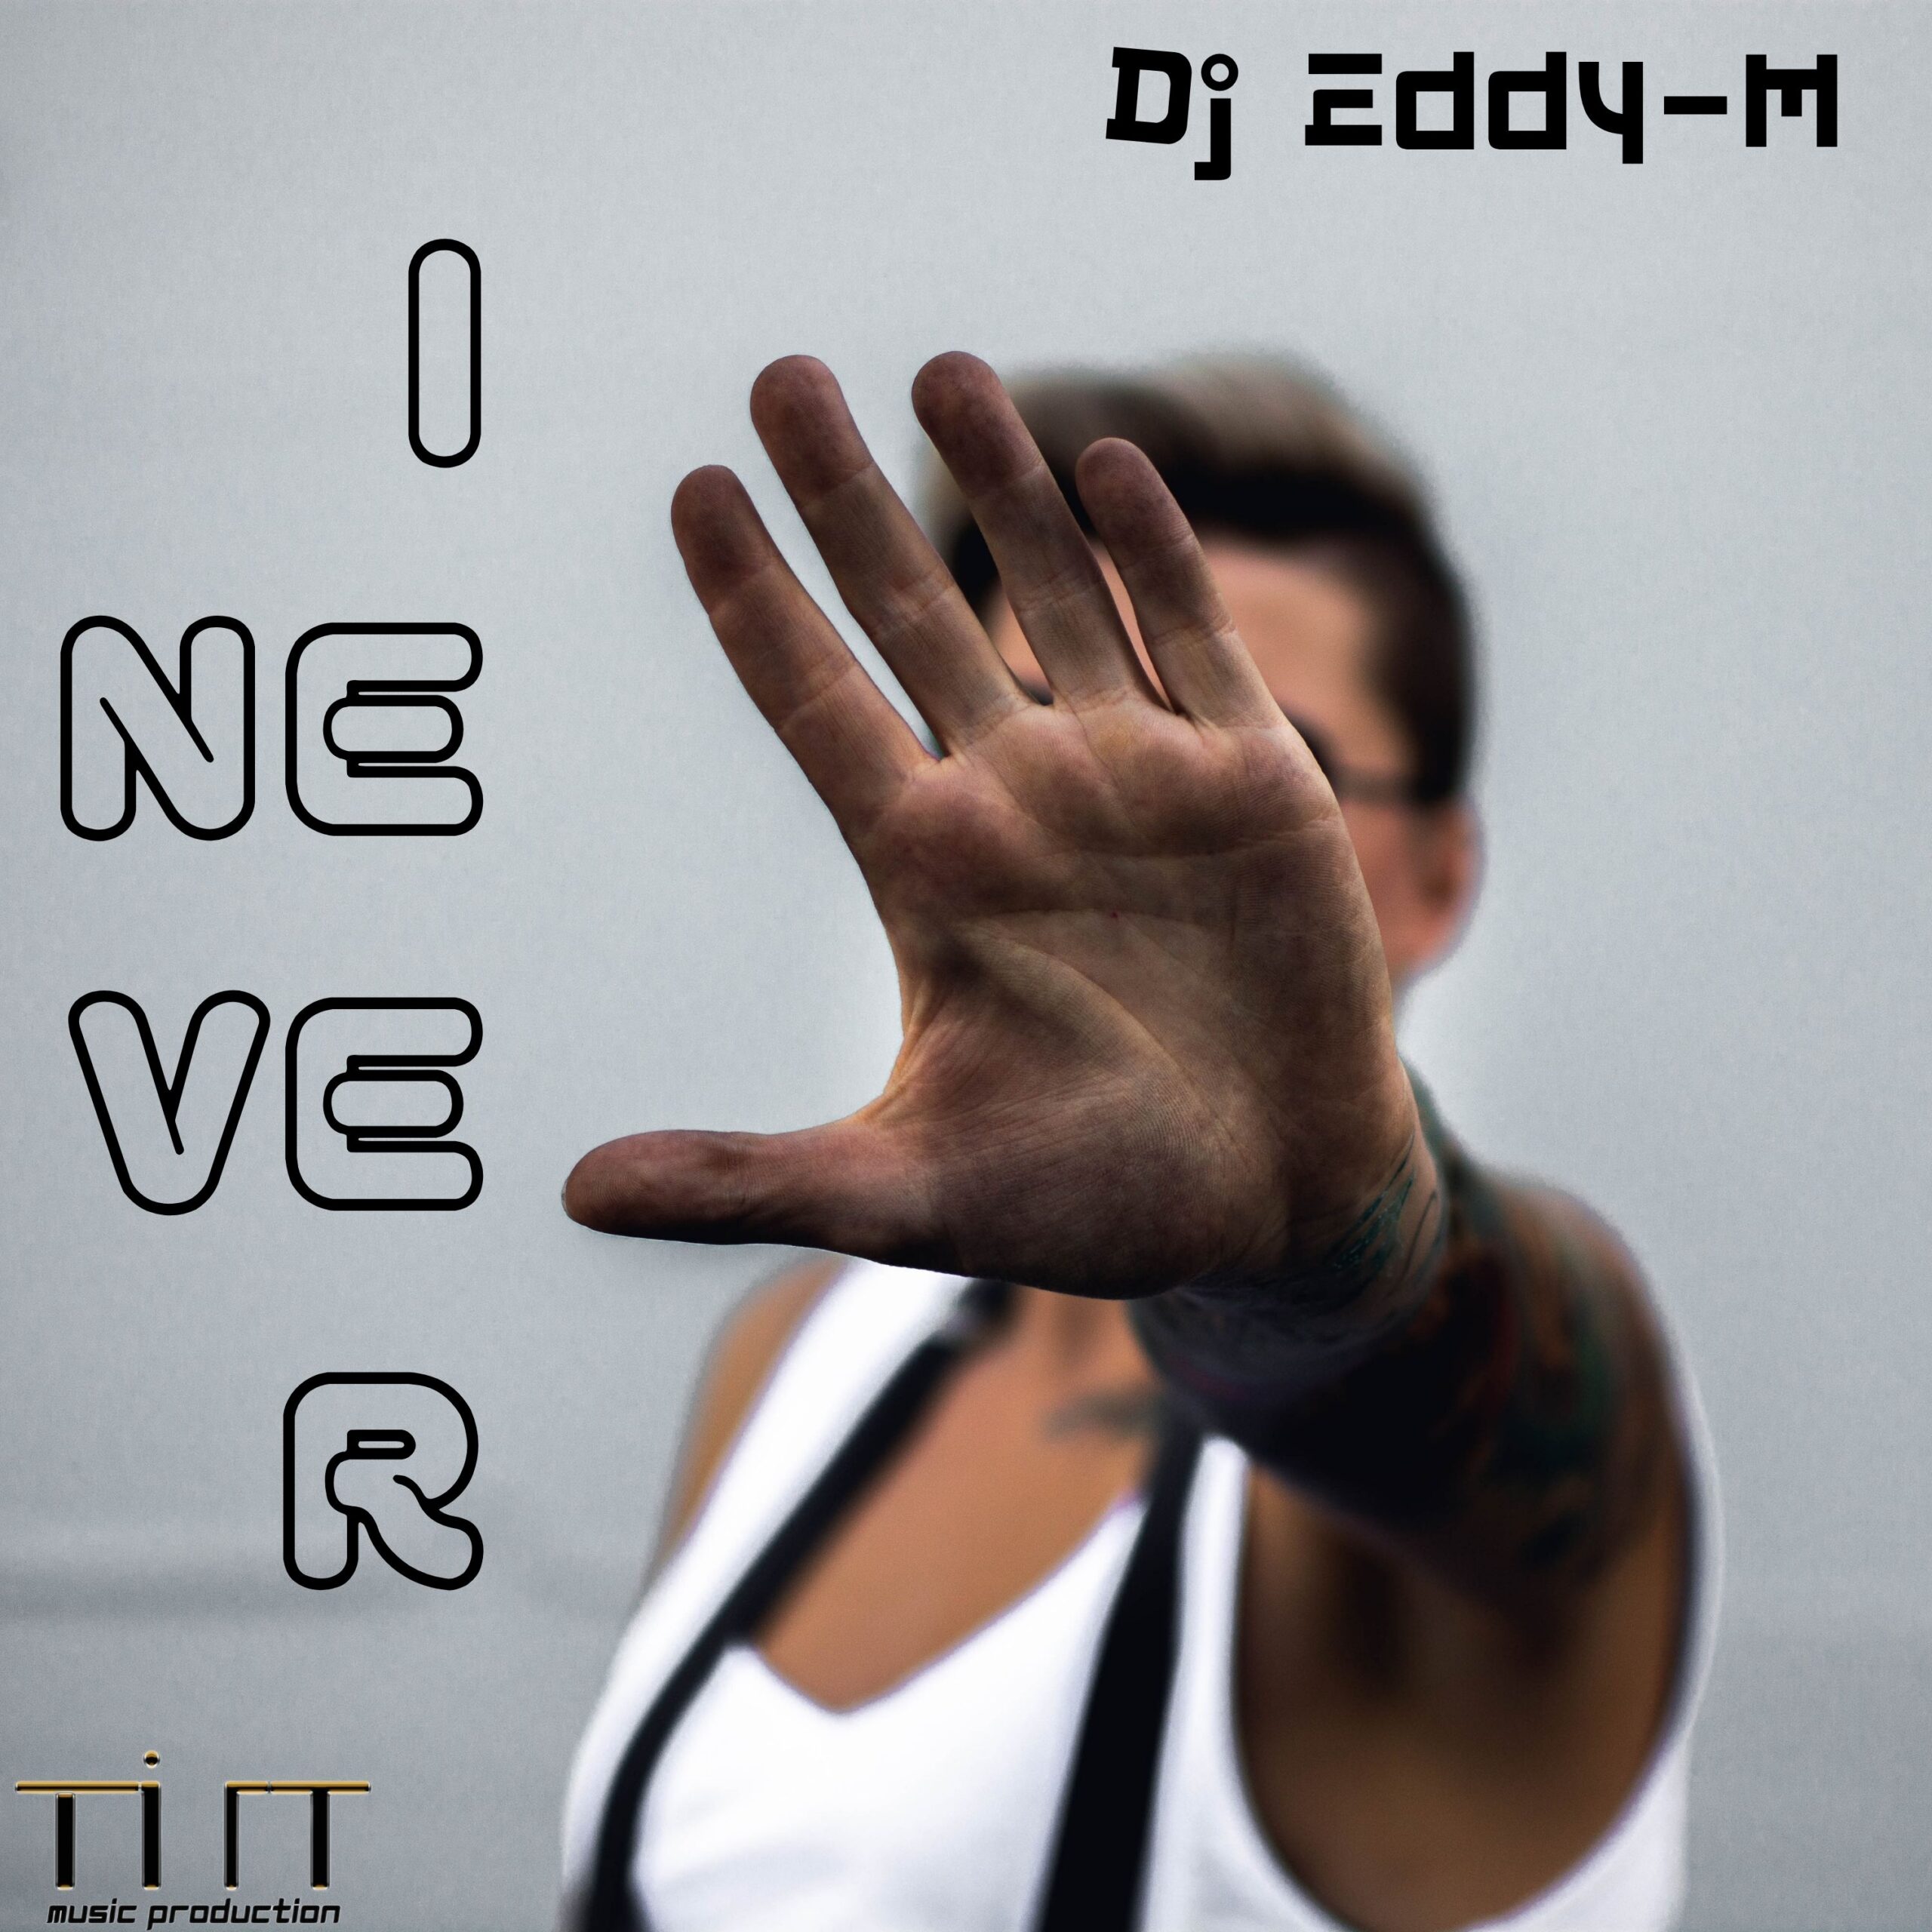 Dj Eddy-M pubblica il nuovo singolo dal titolo “I Never”